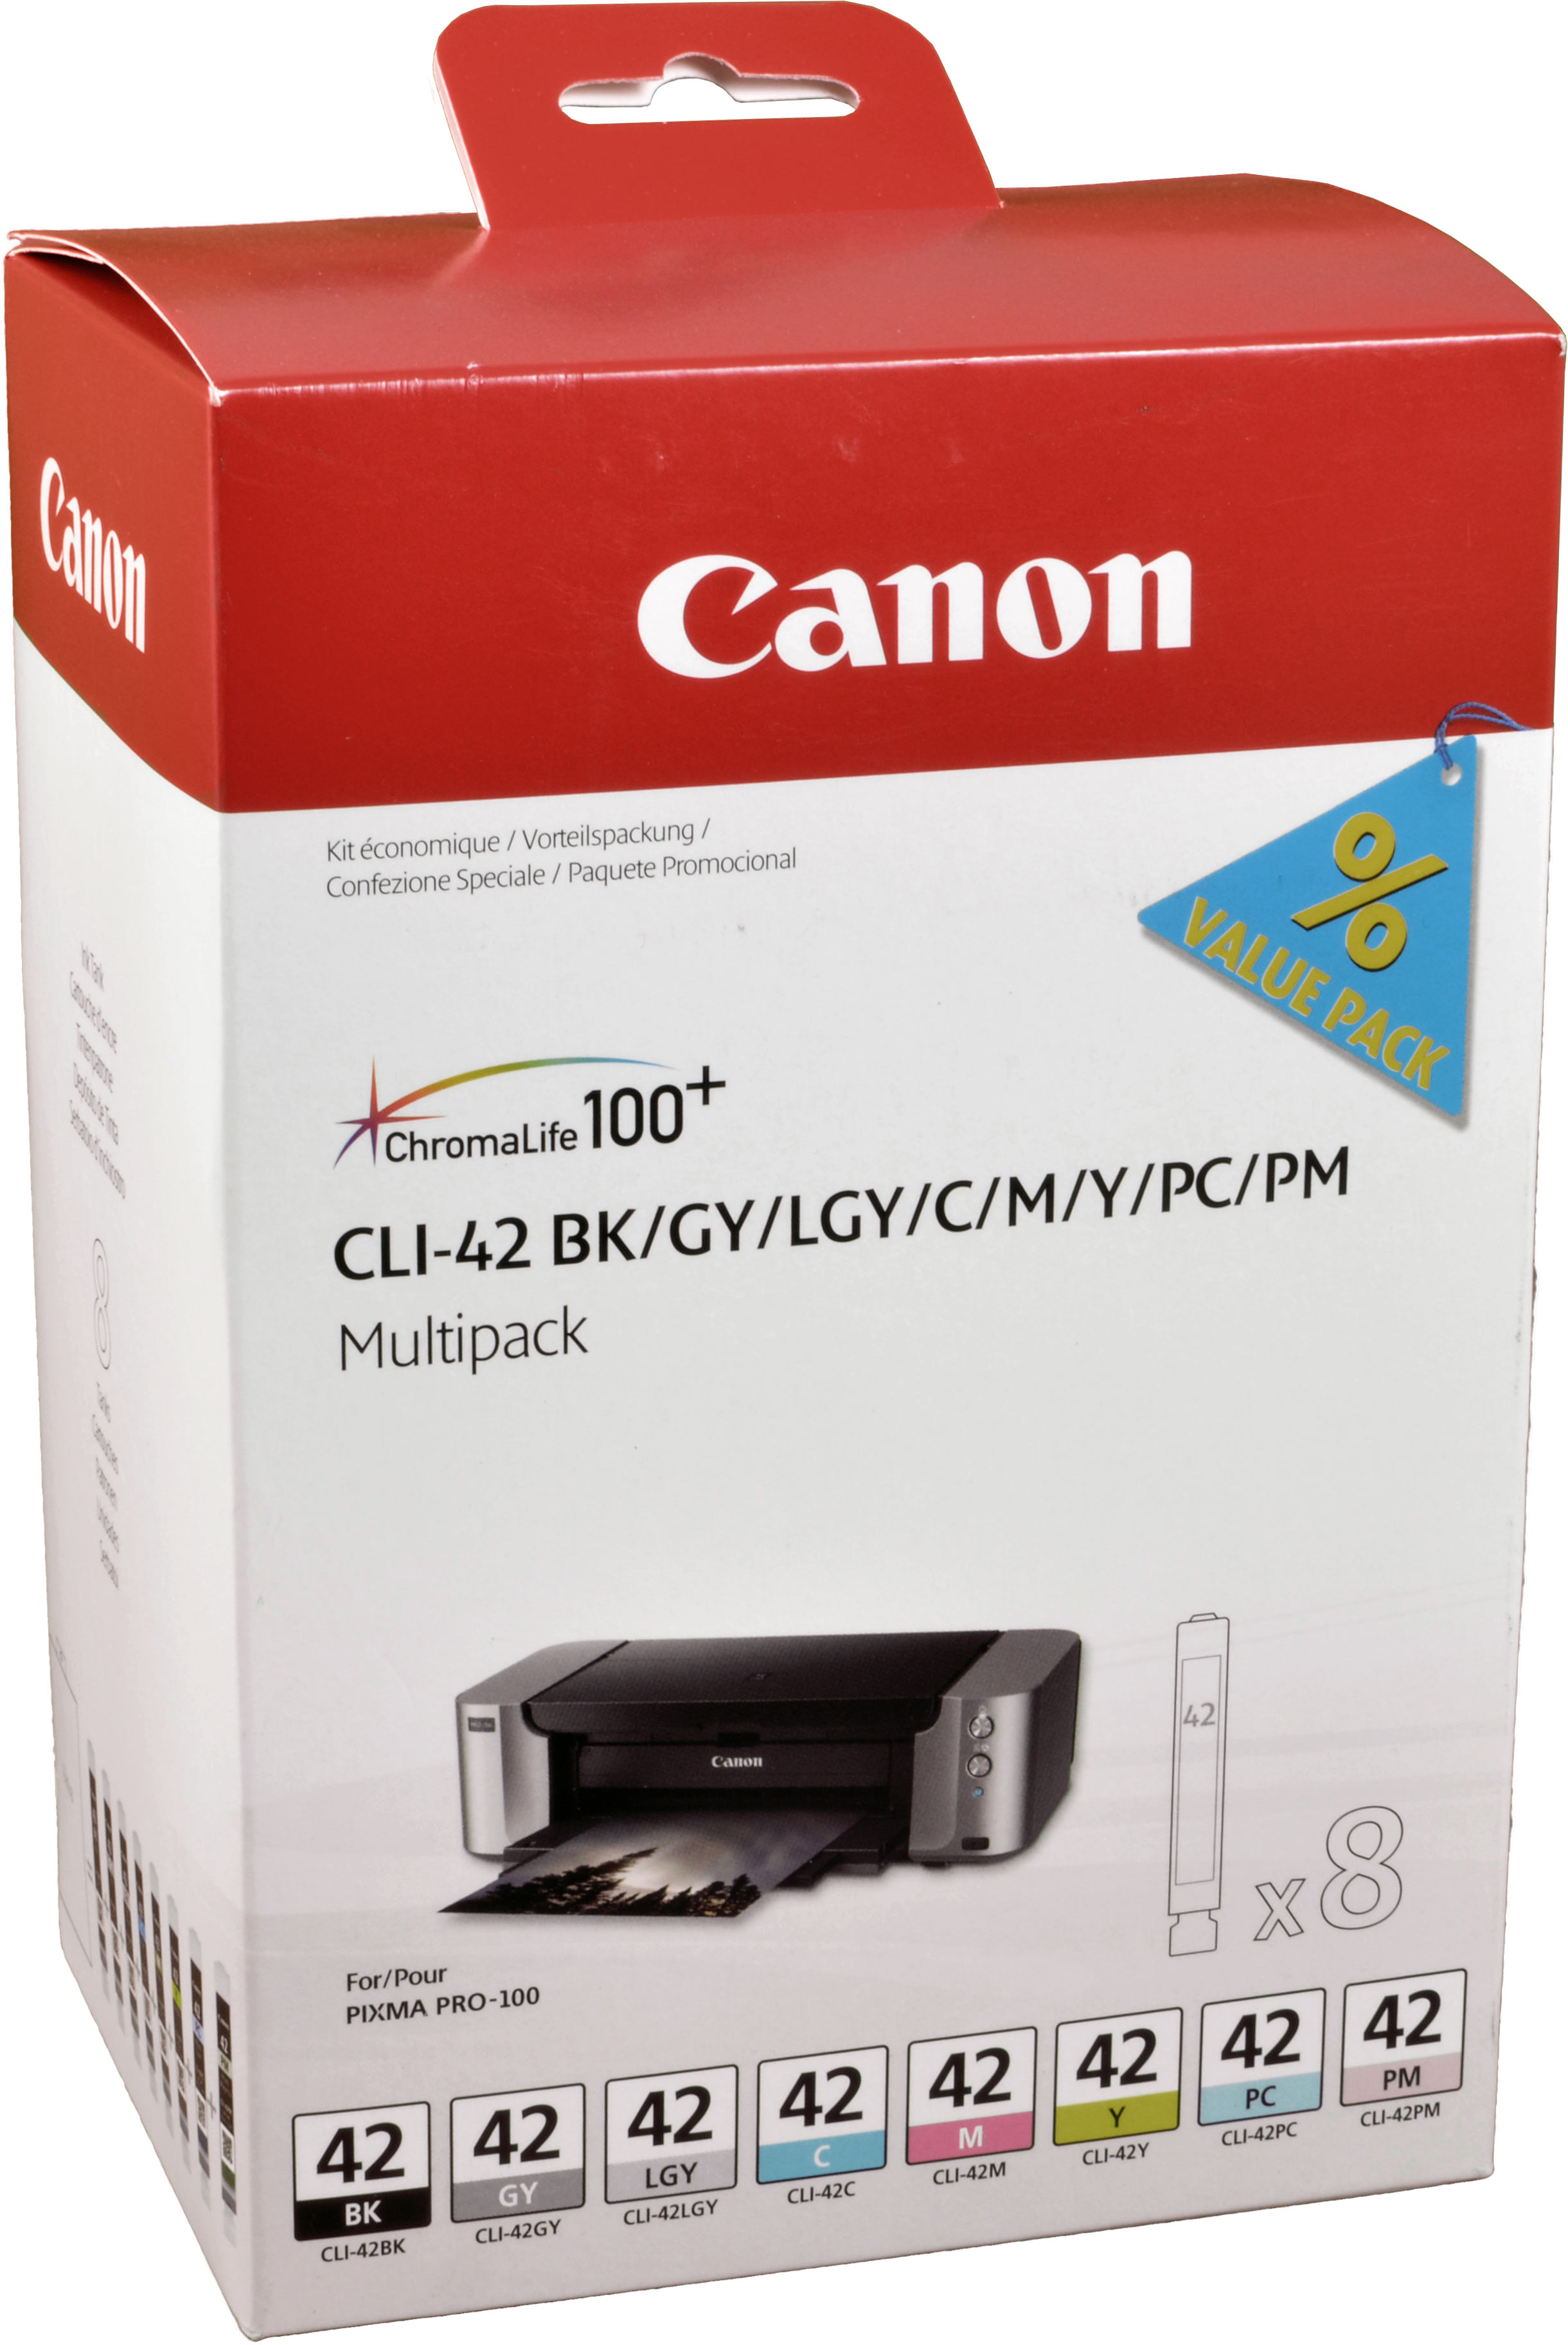 8 Canon Tinten 6384B010  CLI-42 Multipack  8-farbig